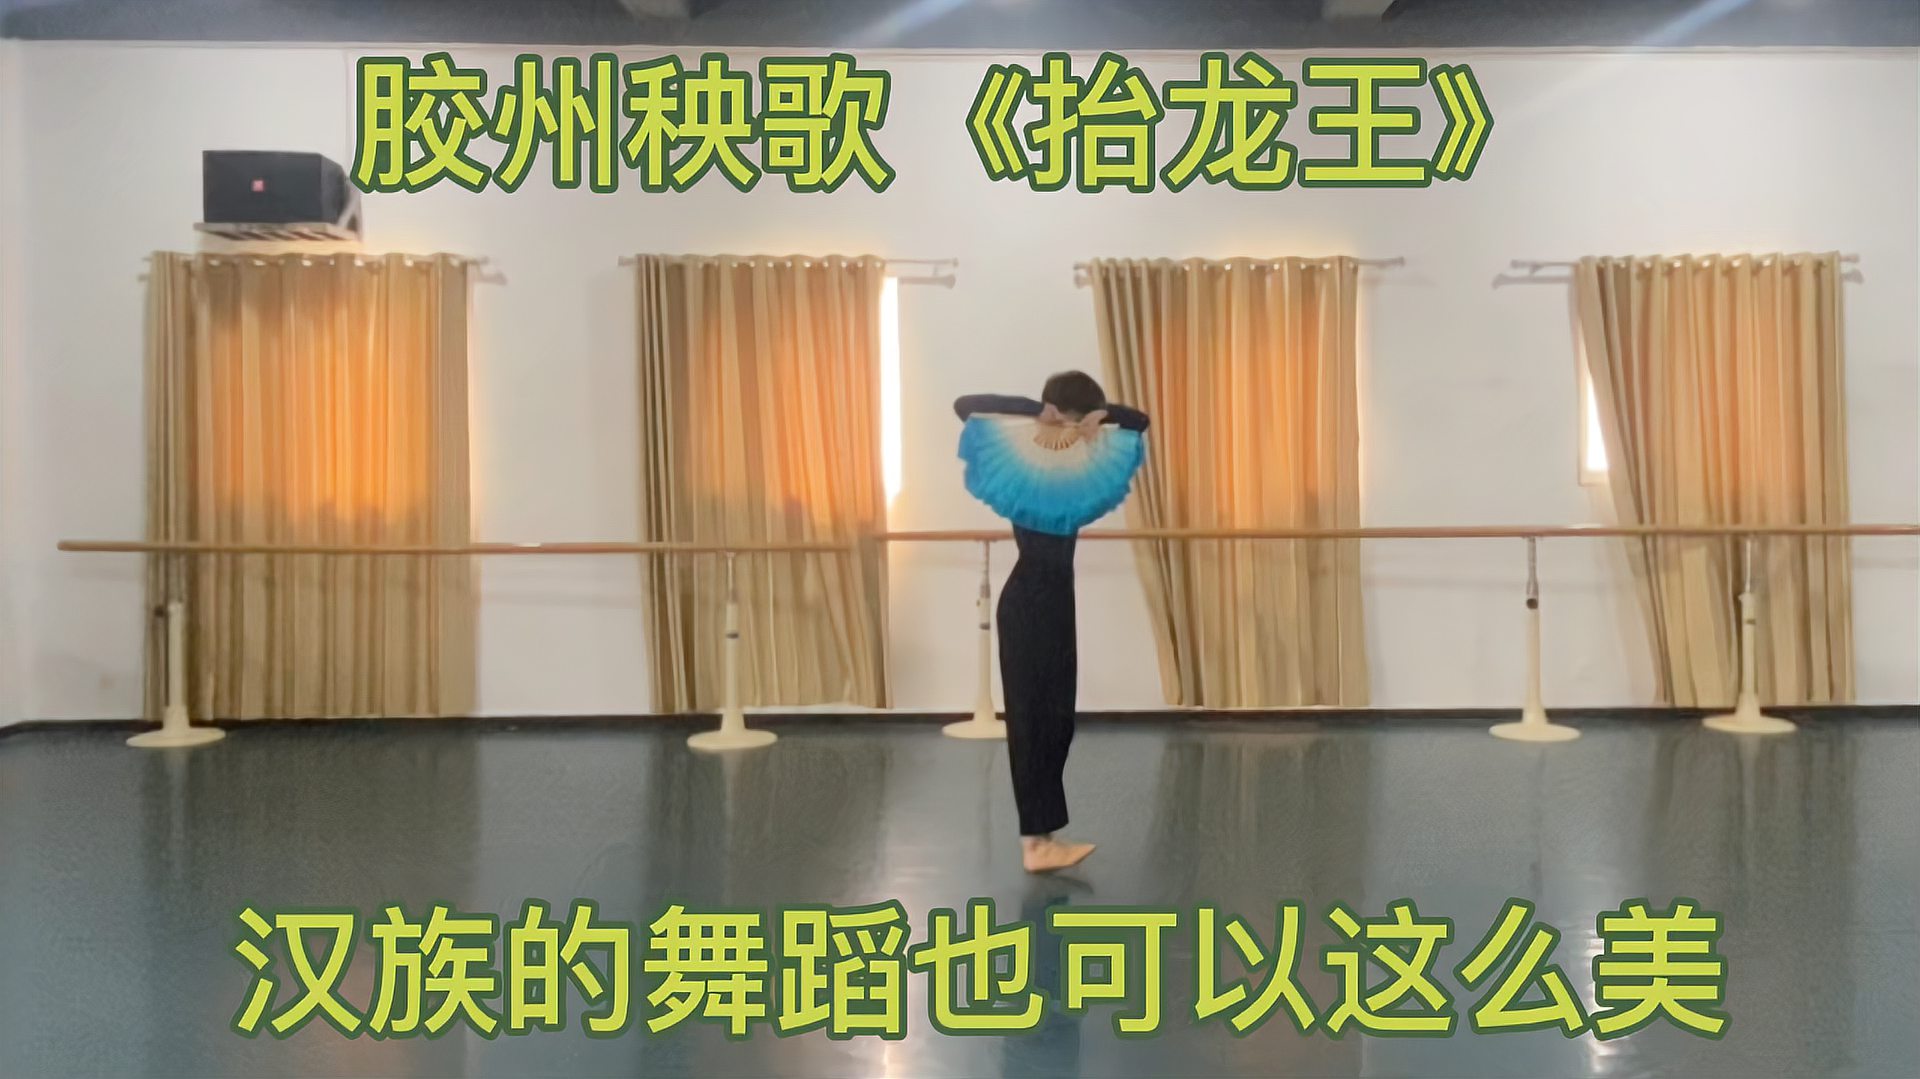 海洋秧歌《抬龙王》,大家来看一看汉族舞蹈的魅